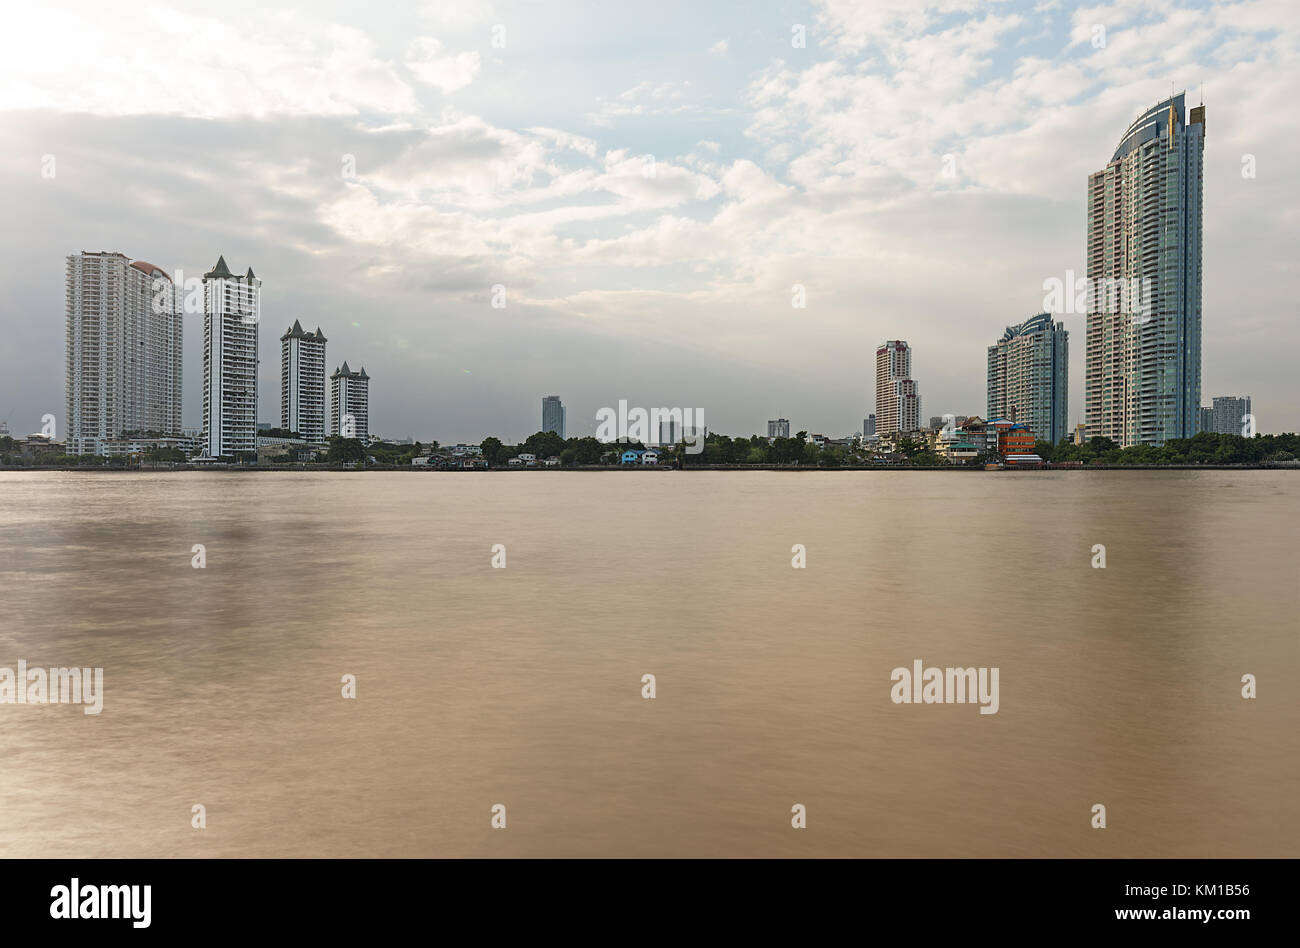 Une sélection d'immeubles en copropriété de bangkok au sud de la rivière Chao Praya de asiatique Banque D'Images